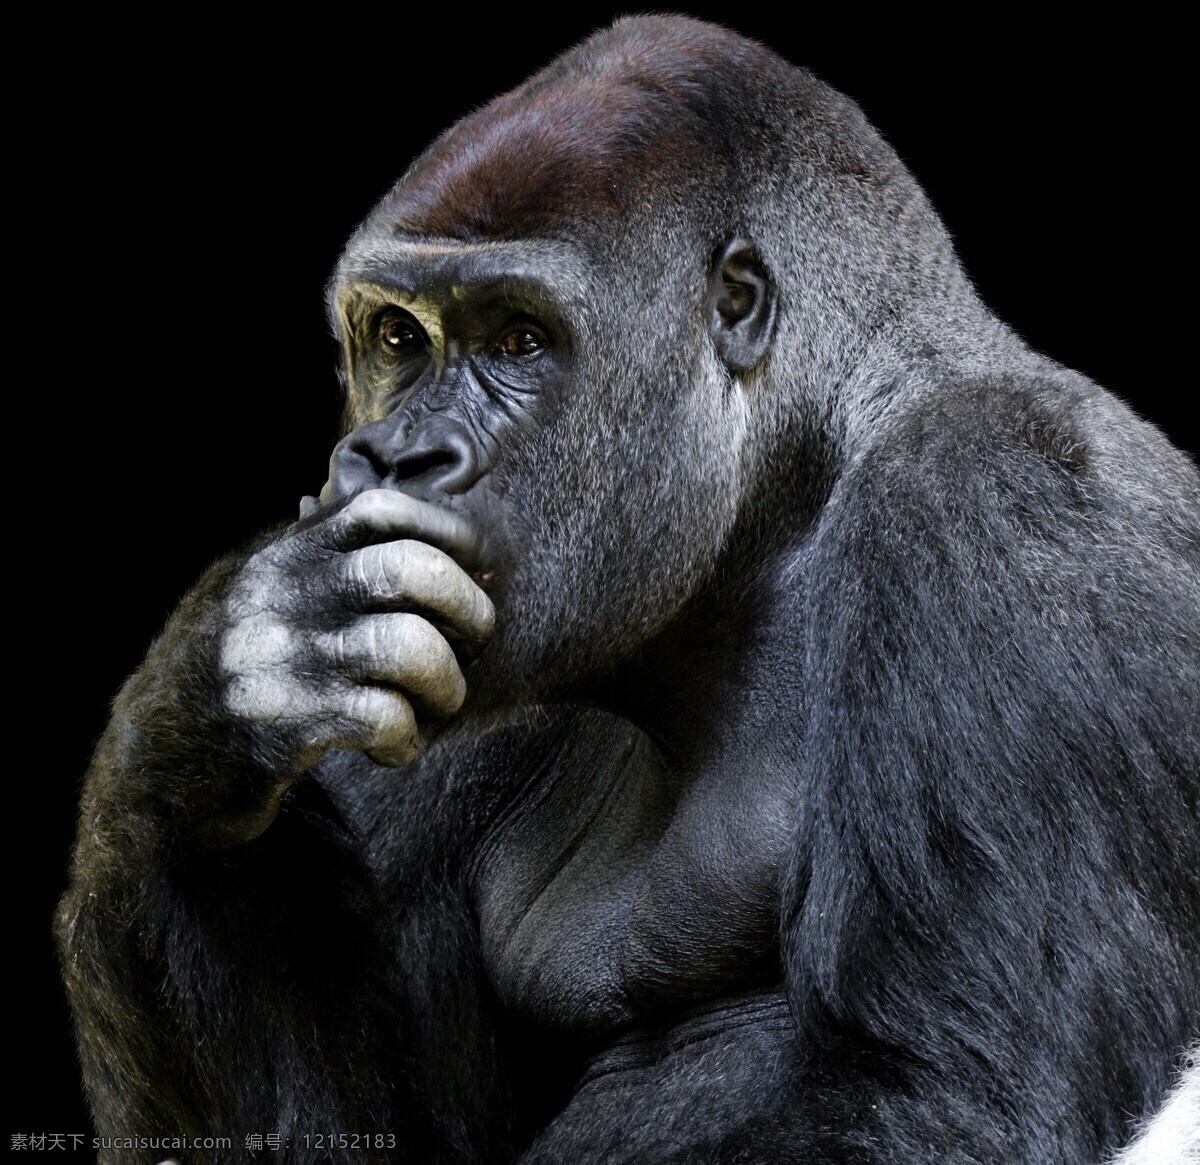 捂 嘴巴 大猩猩 特写 捂着嘴巴 大猩猩特写 动物 黑猩猩 近景 cc0 高清 生物世界 野生动物